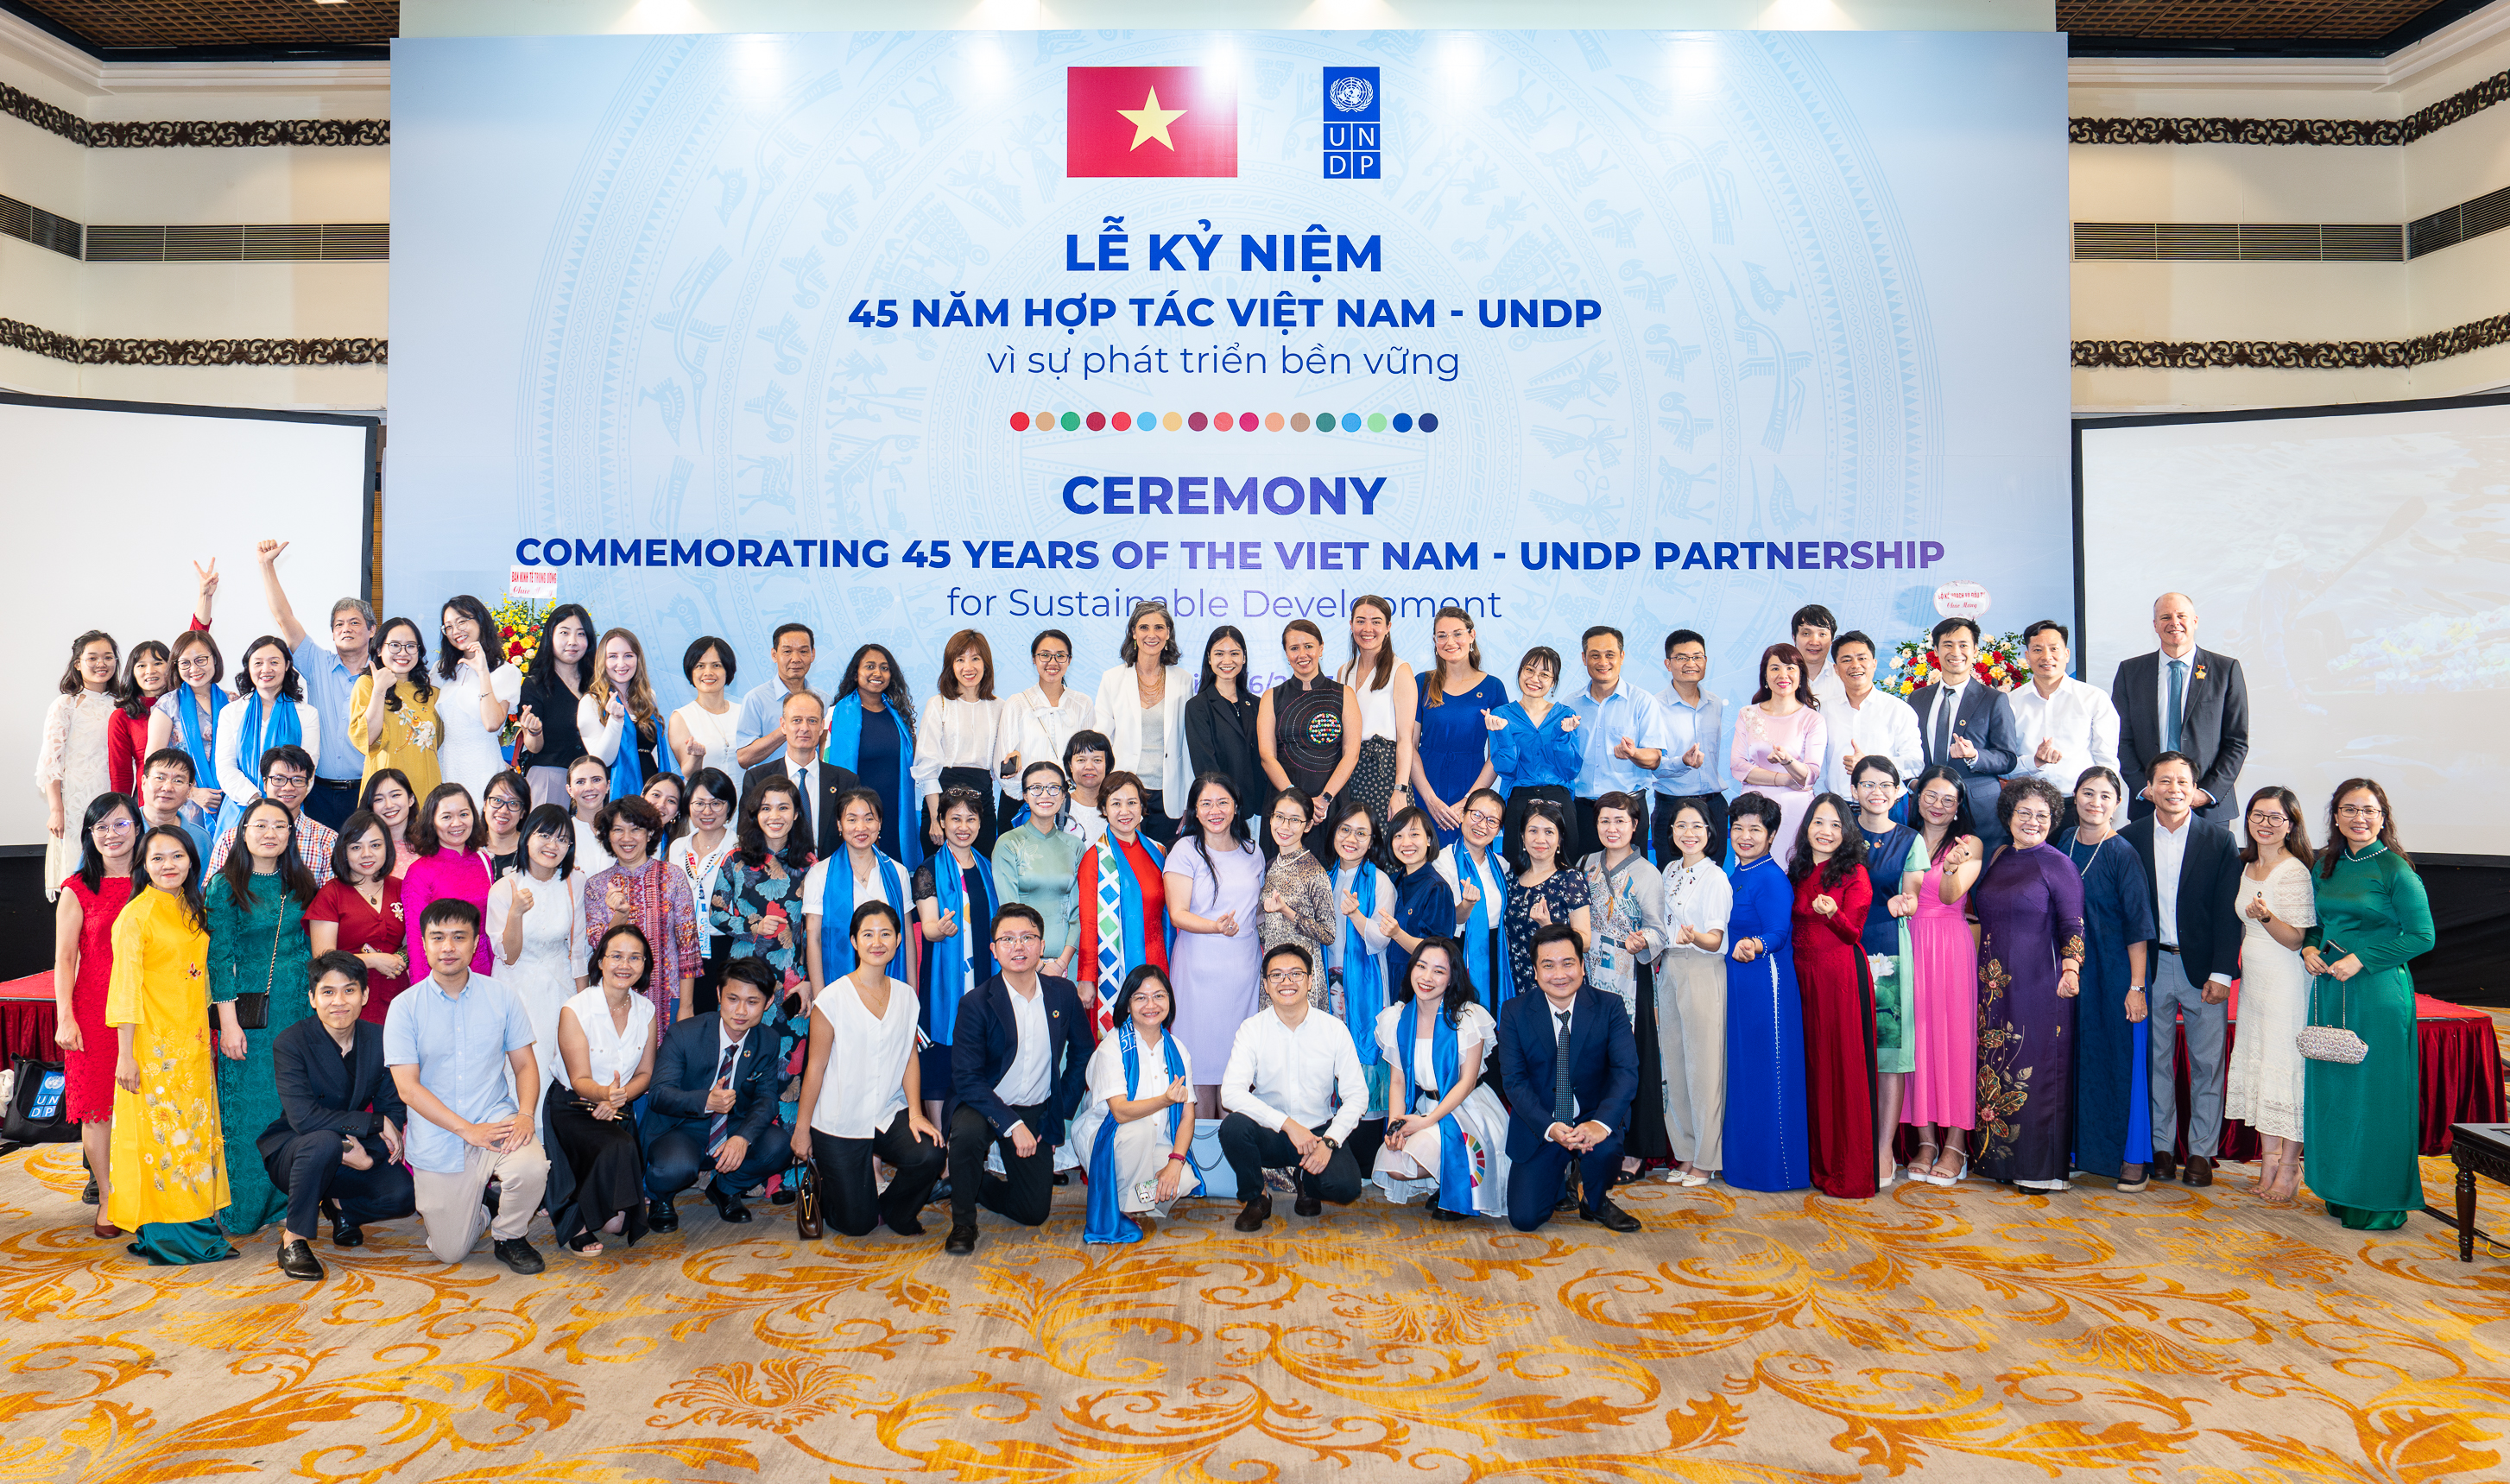 Viet Nam - UNDP: 45 Years of Partnership for Sustainable Development